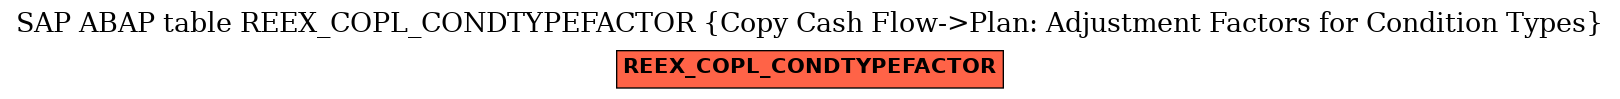 E-R Diagram for table REEX_COPL_CONDTYPEFACTOR (Copy Cash Flow->Plan: Adjustment Factors for Condition Types)